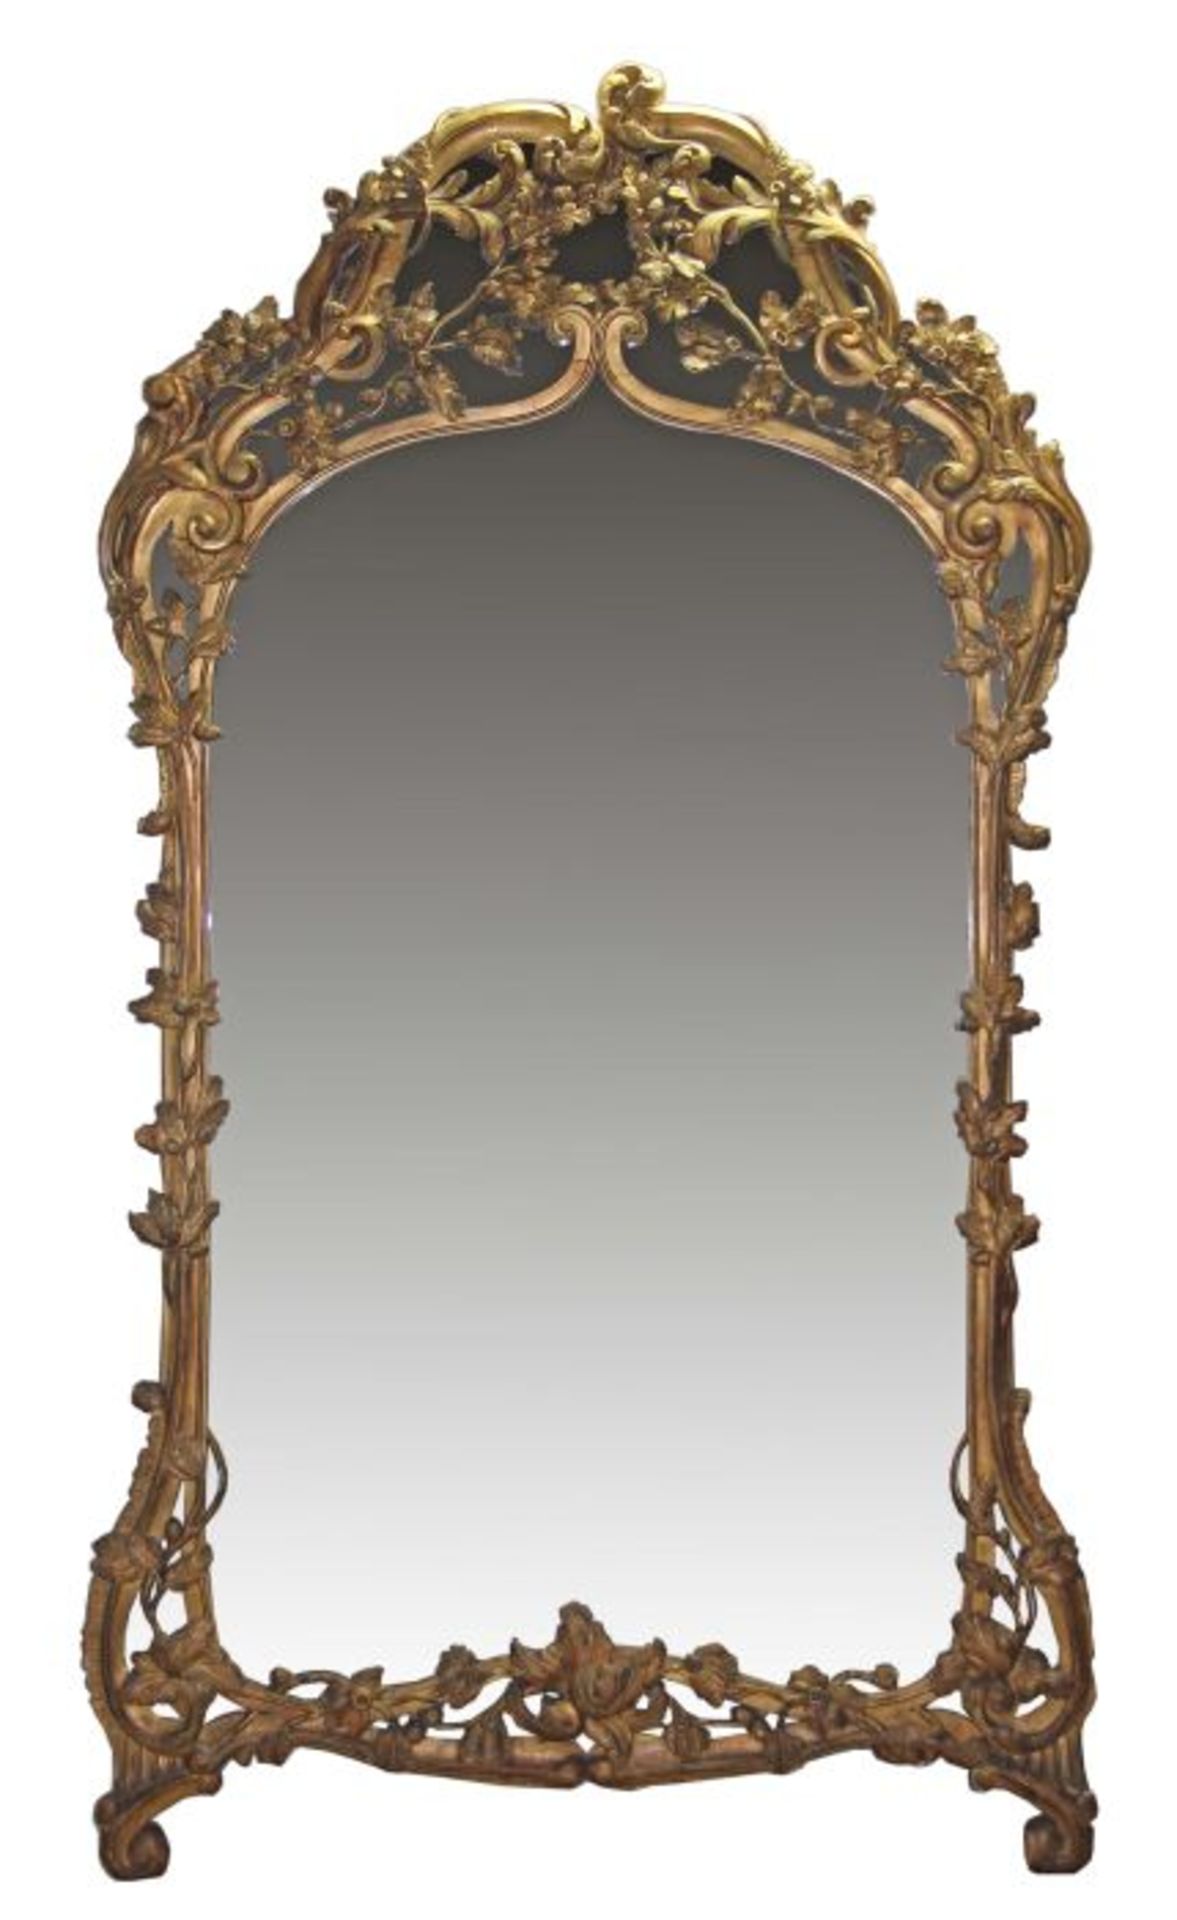 Barockstil-Spiegel mit EichenlaubdekorEnde 19. Jh., monumentaler Standspiegel, der vergoldete